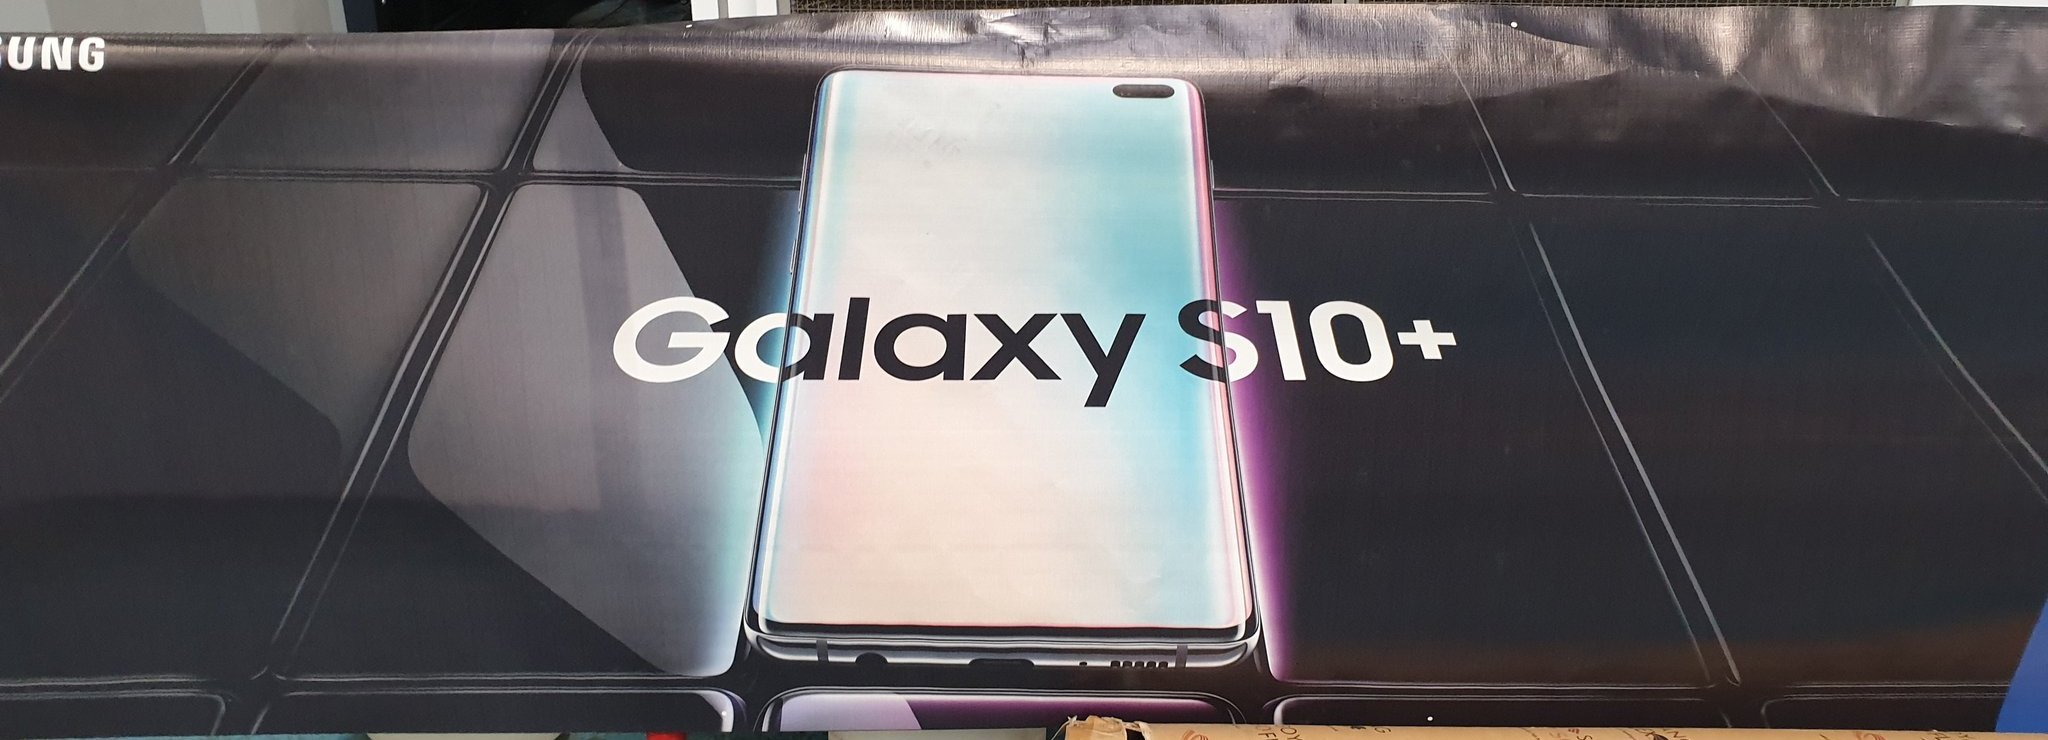 Samsung GALAXY S10 świetna wiadomość